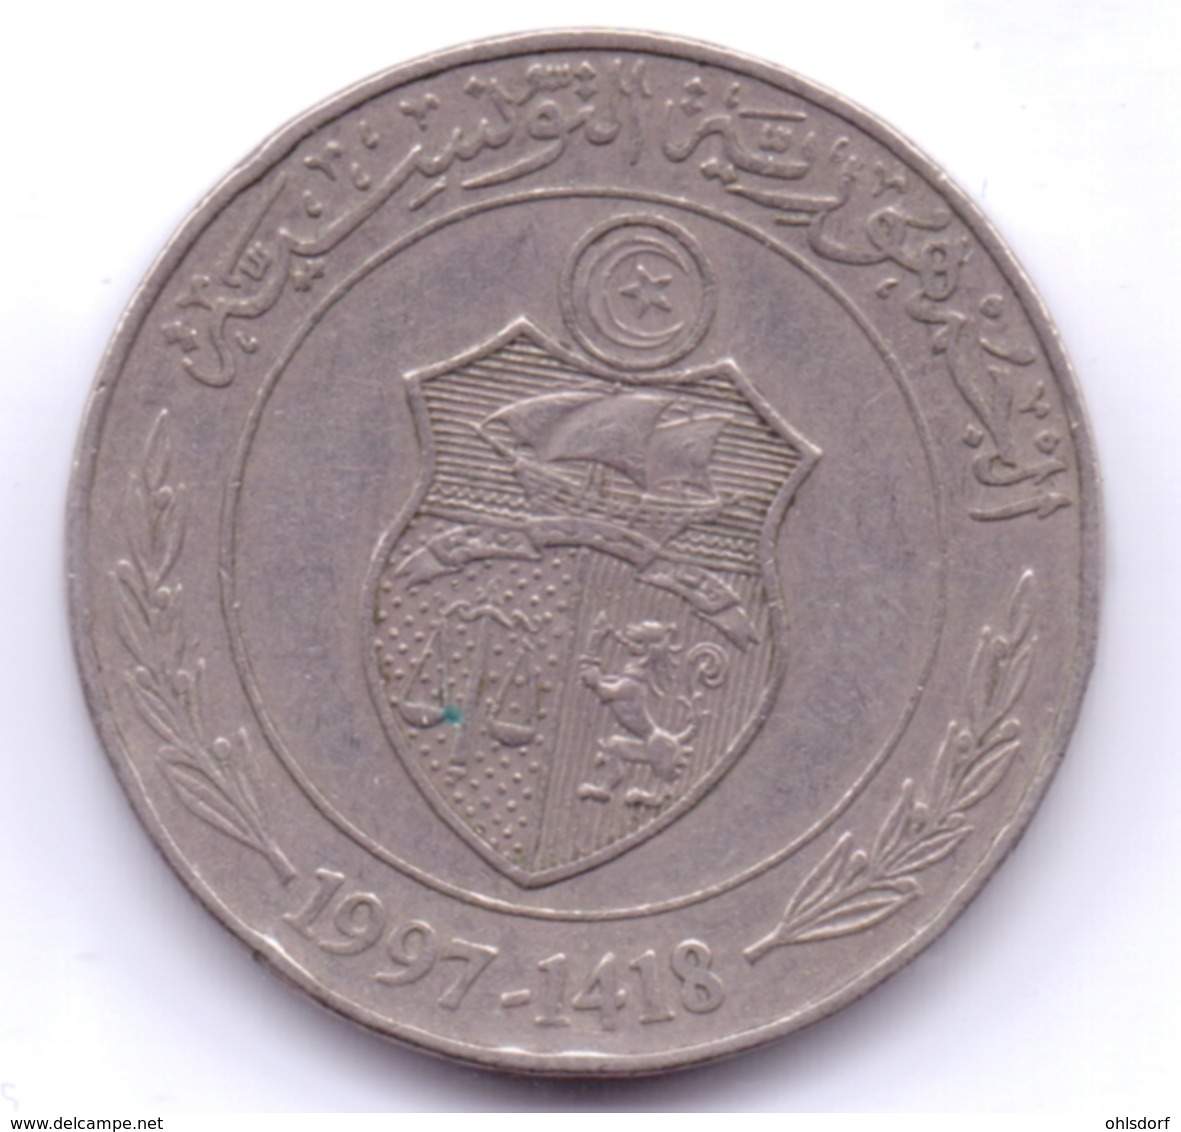 TUNISIE 1997: 1 Dinar, KM 347 - Tunisie